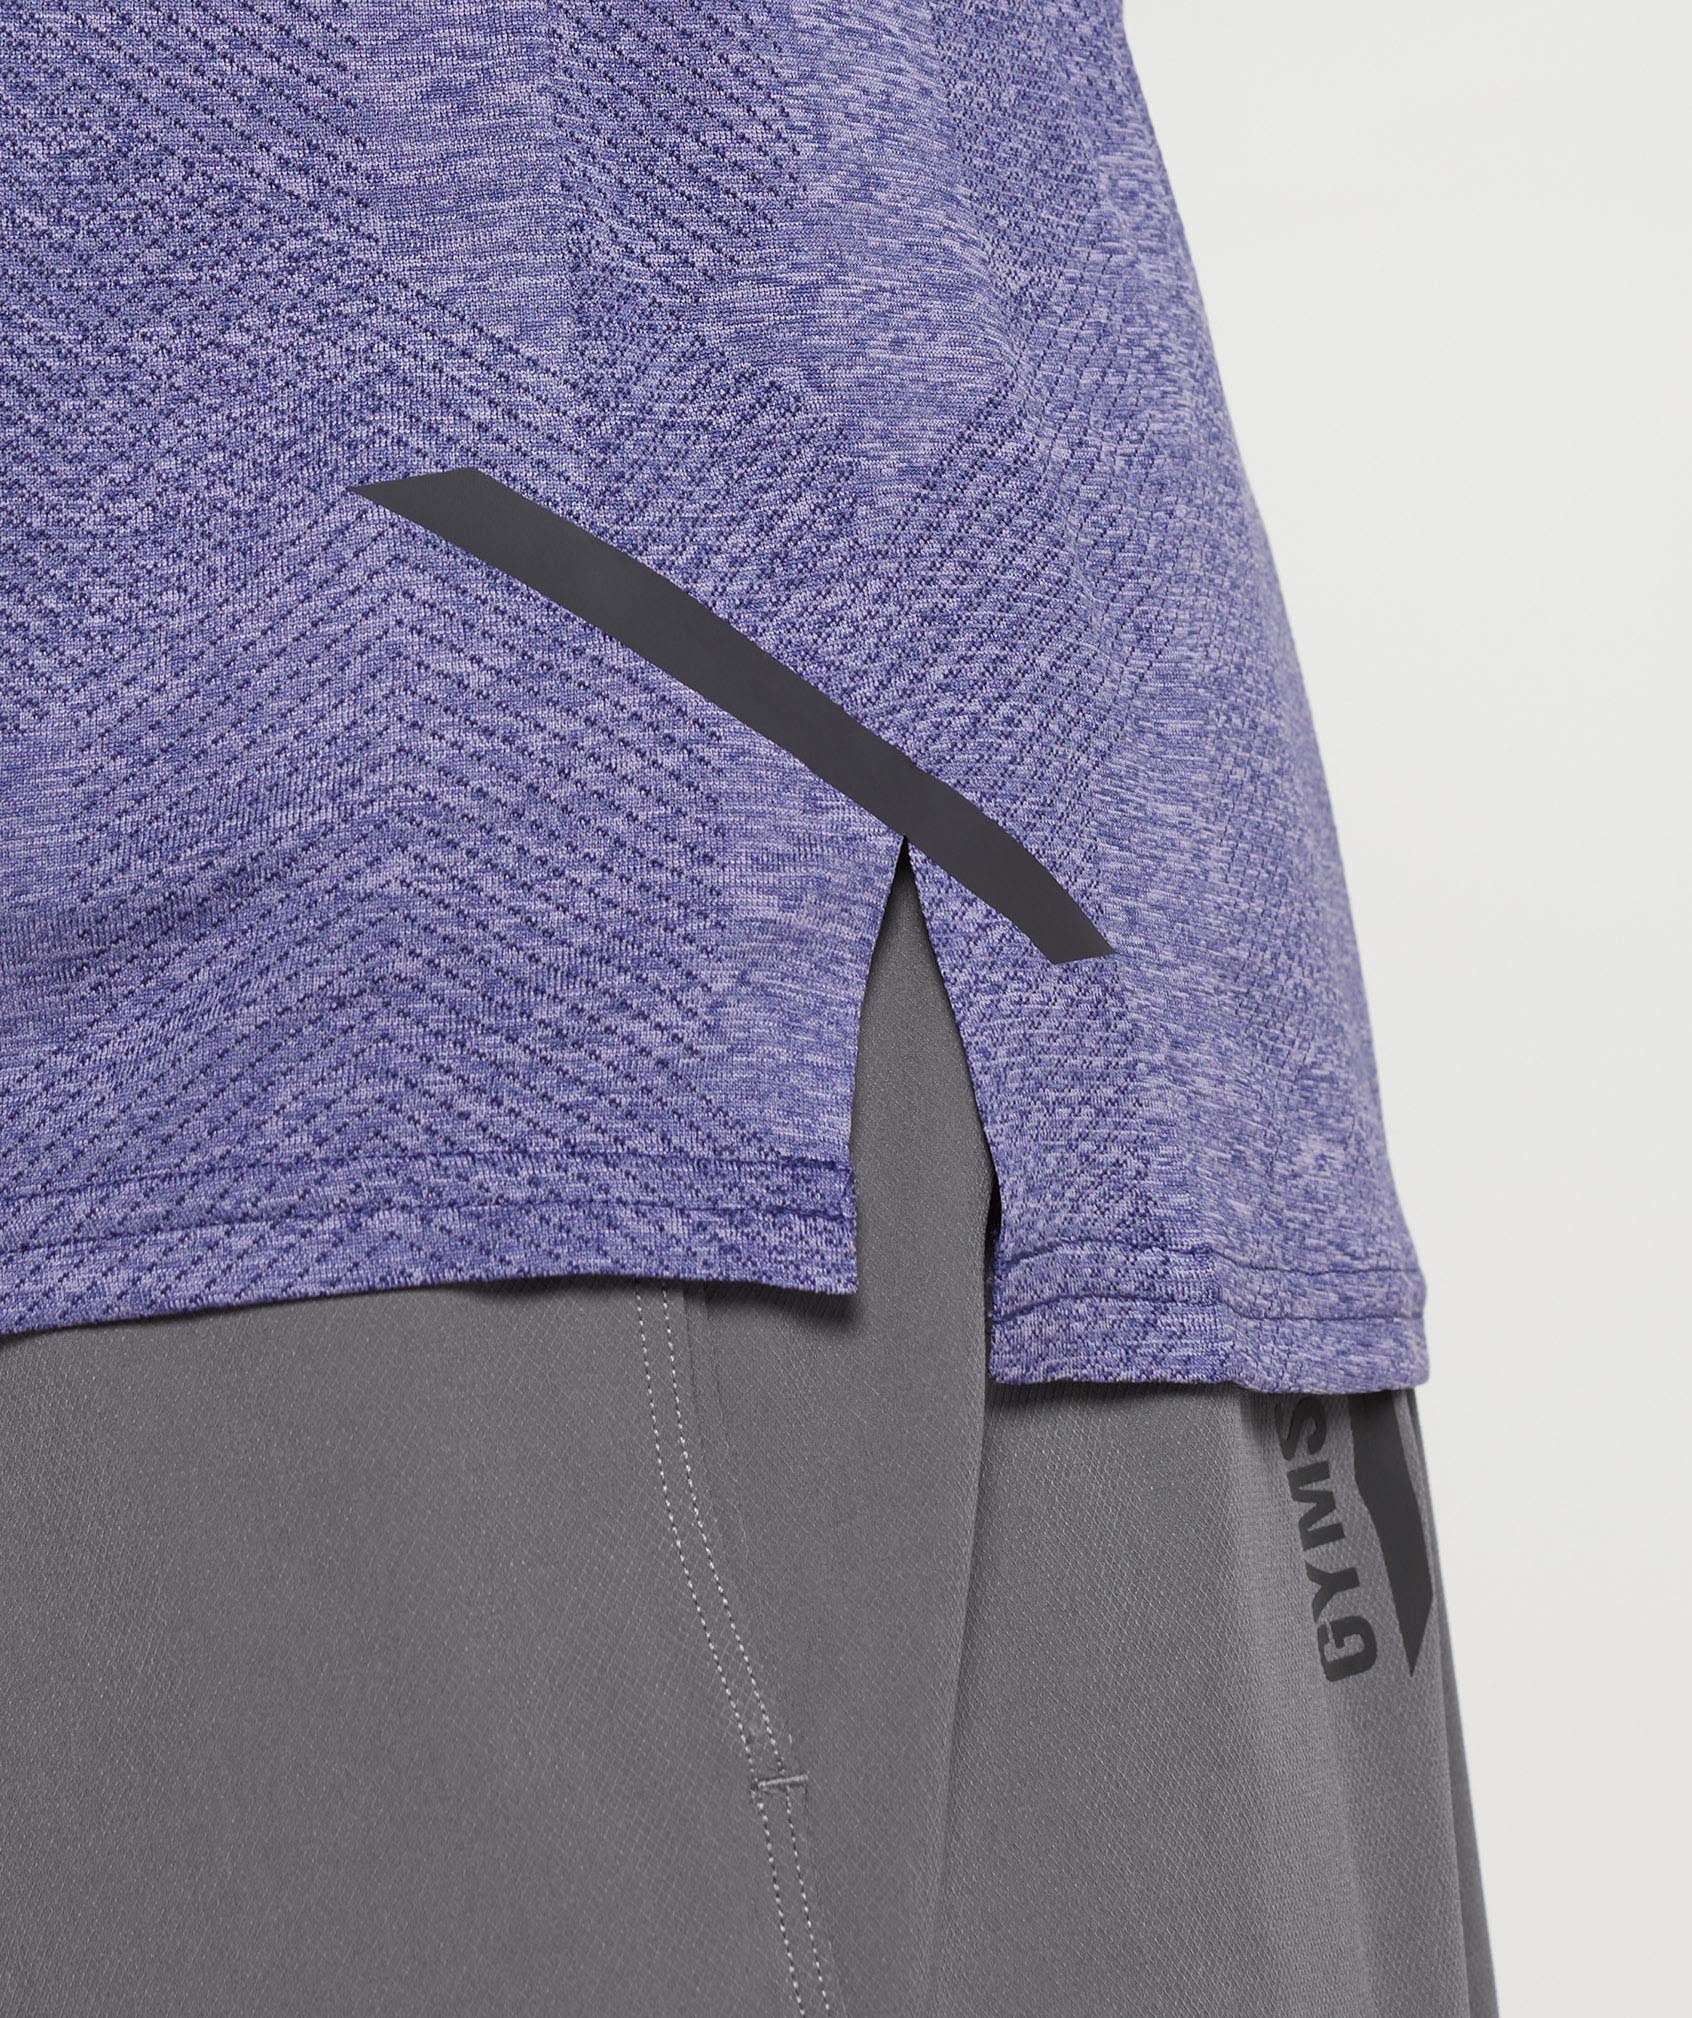 Apex Long Sleeve T-Shirt in Neptune Purple/Velvet Purple